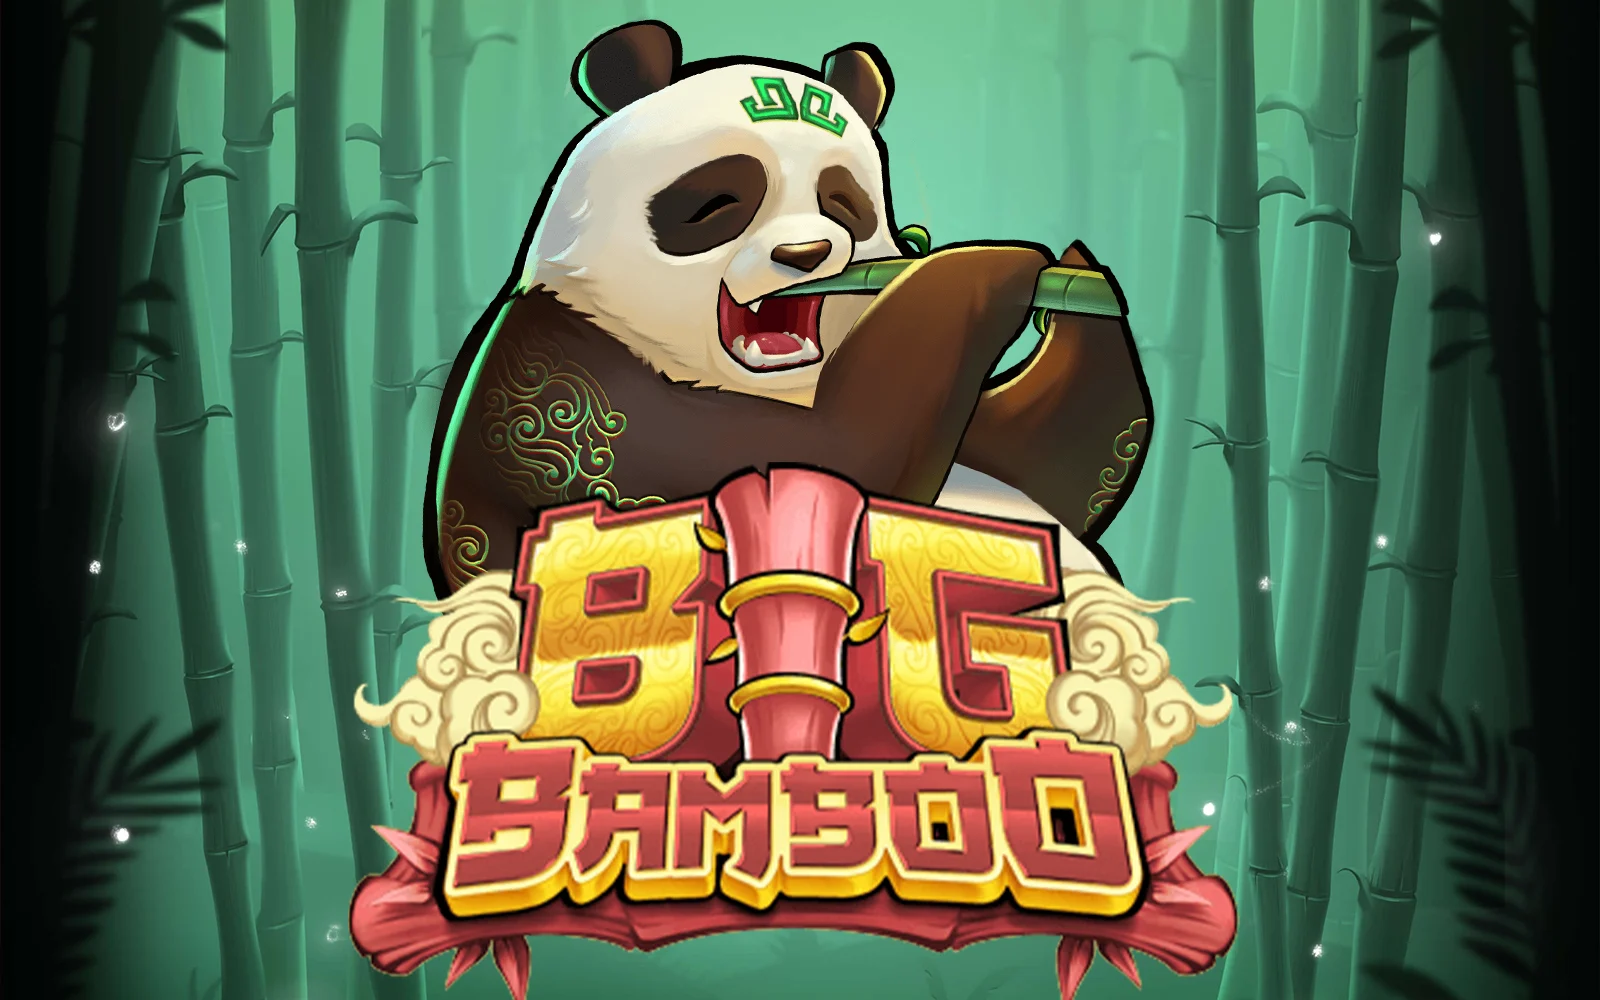 Play Big Bamboo on Starcasino.be online casino